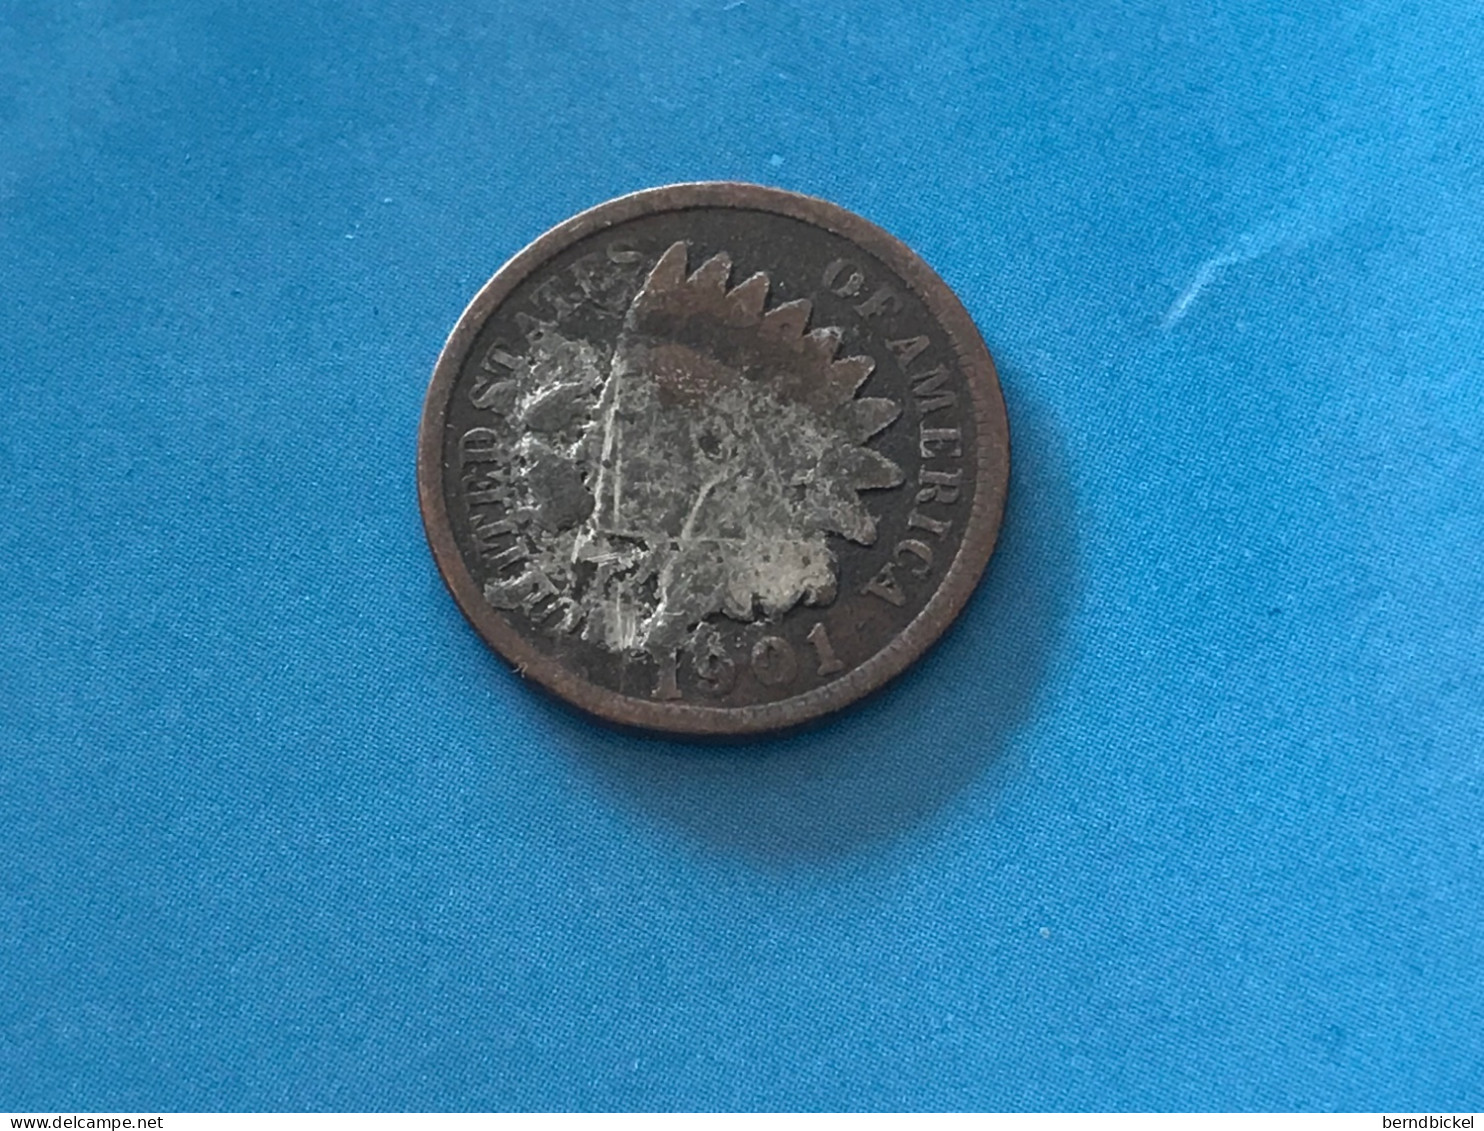 Münze Münzen Umlaufmünze USA 1 Cent 1901 - 1859-1909: Indian Head